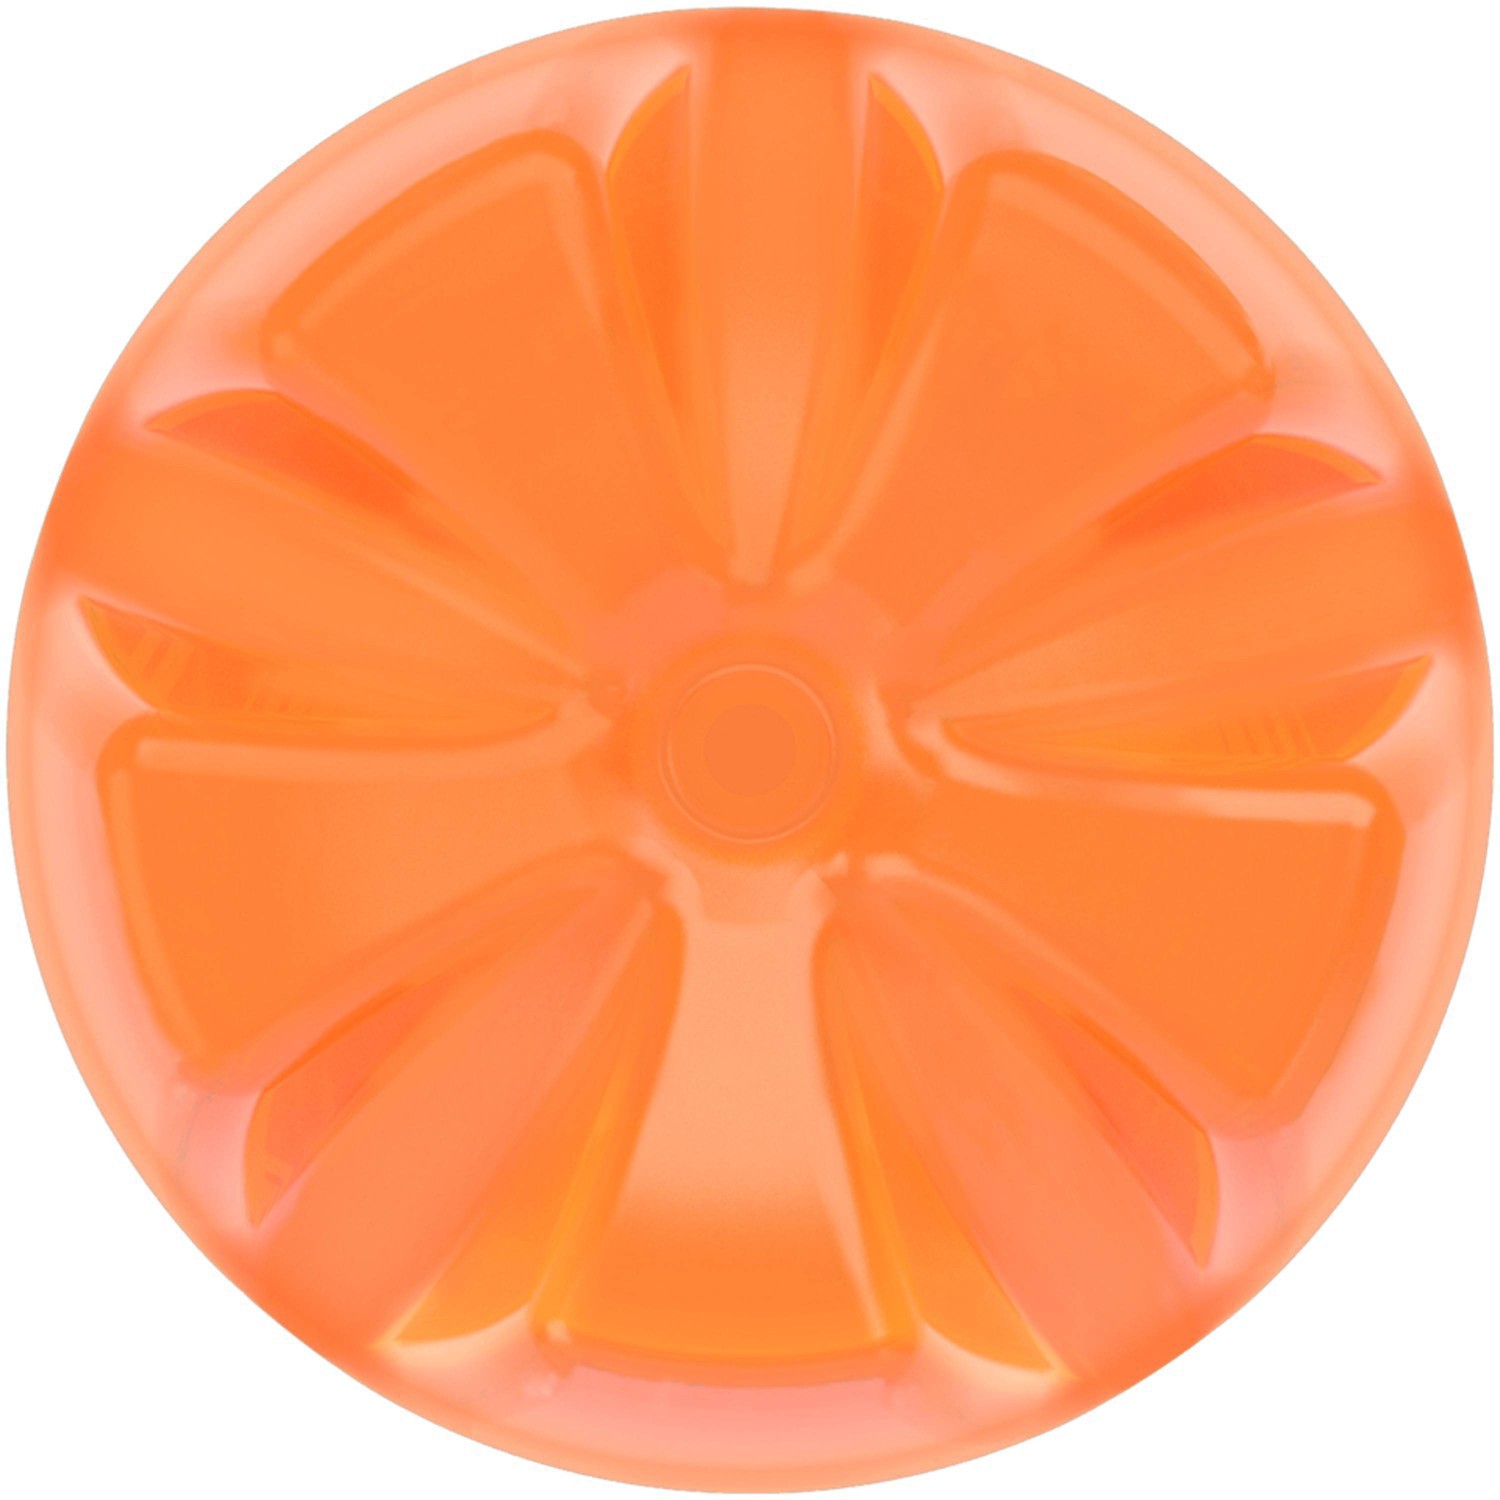 slide 10 of 52, Fanta Orange Soda Fruit Flavored Soft Drink, 20 fl oz, 20 fl oz